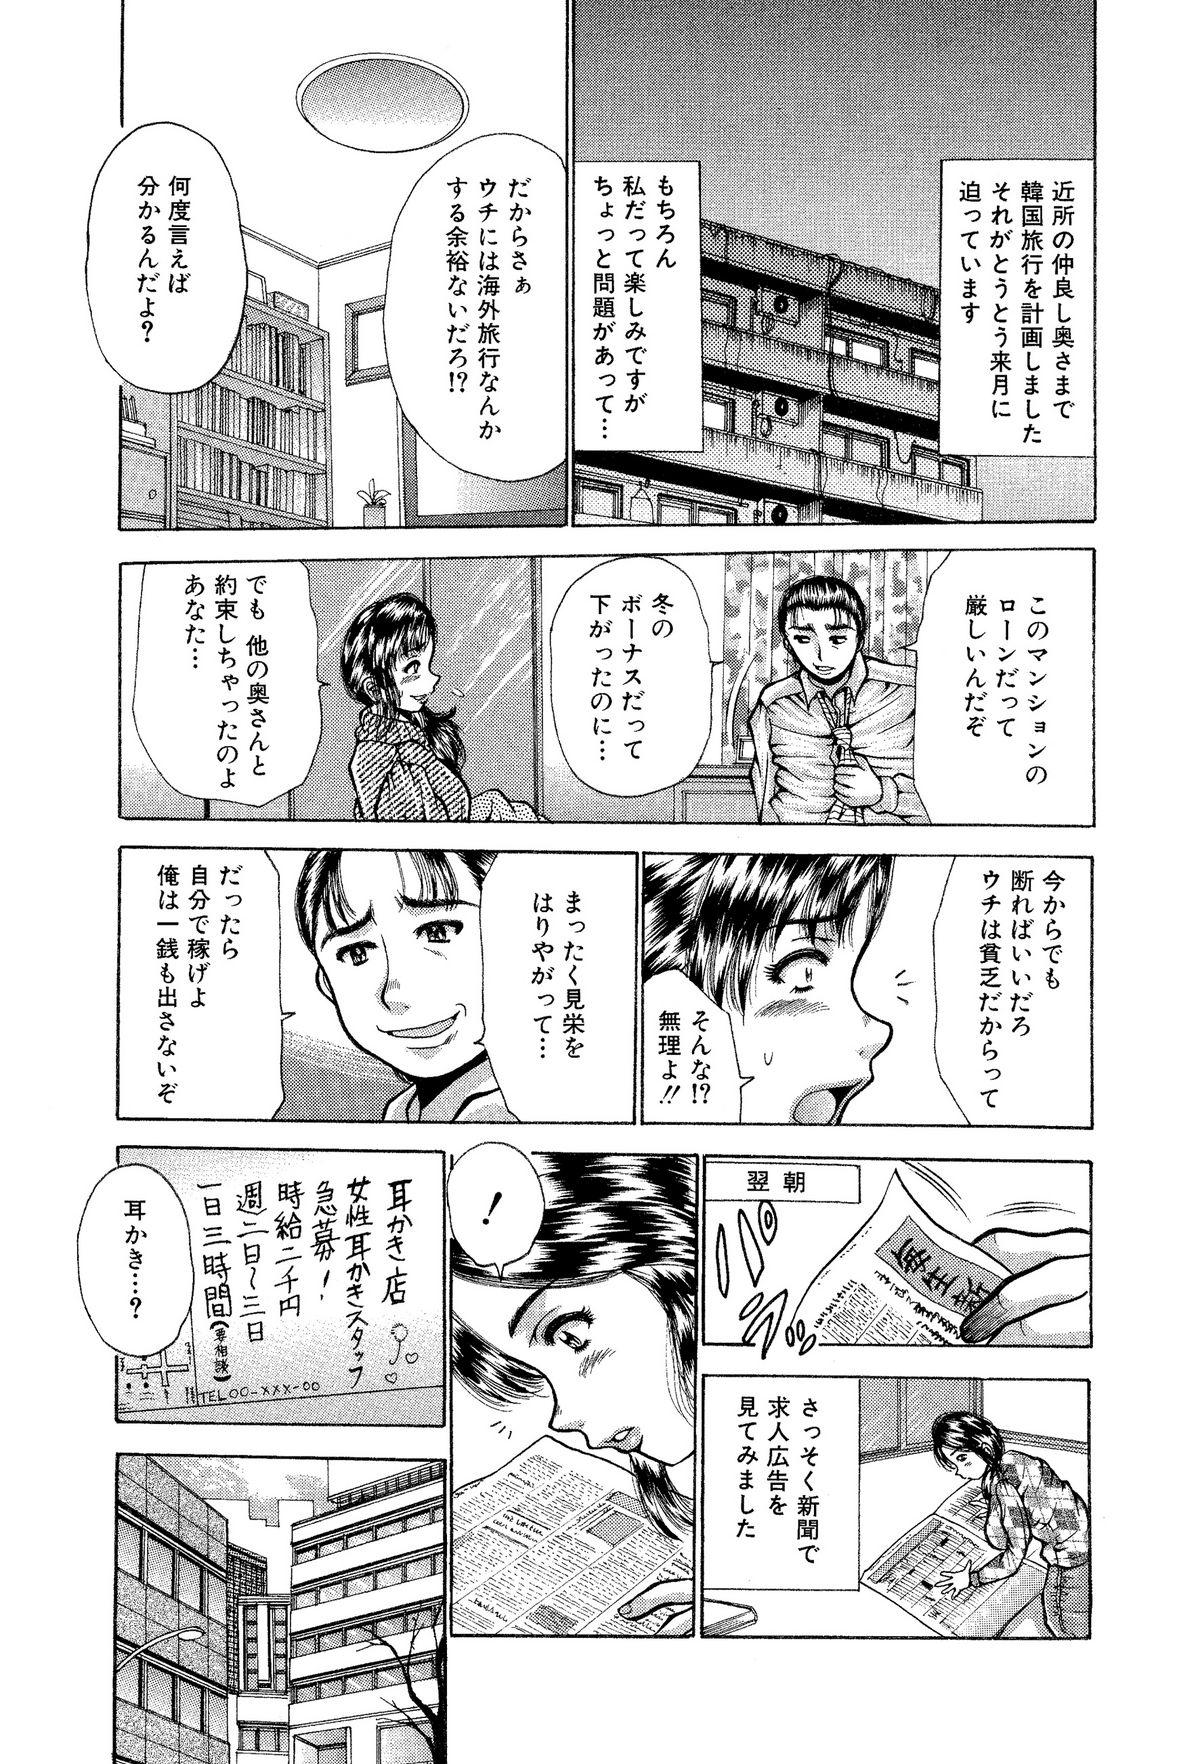 Hardcore Sex Itai Oku-san Manga o Atsumetemita 3some - Page 4